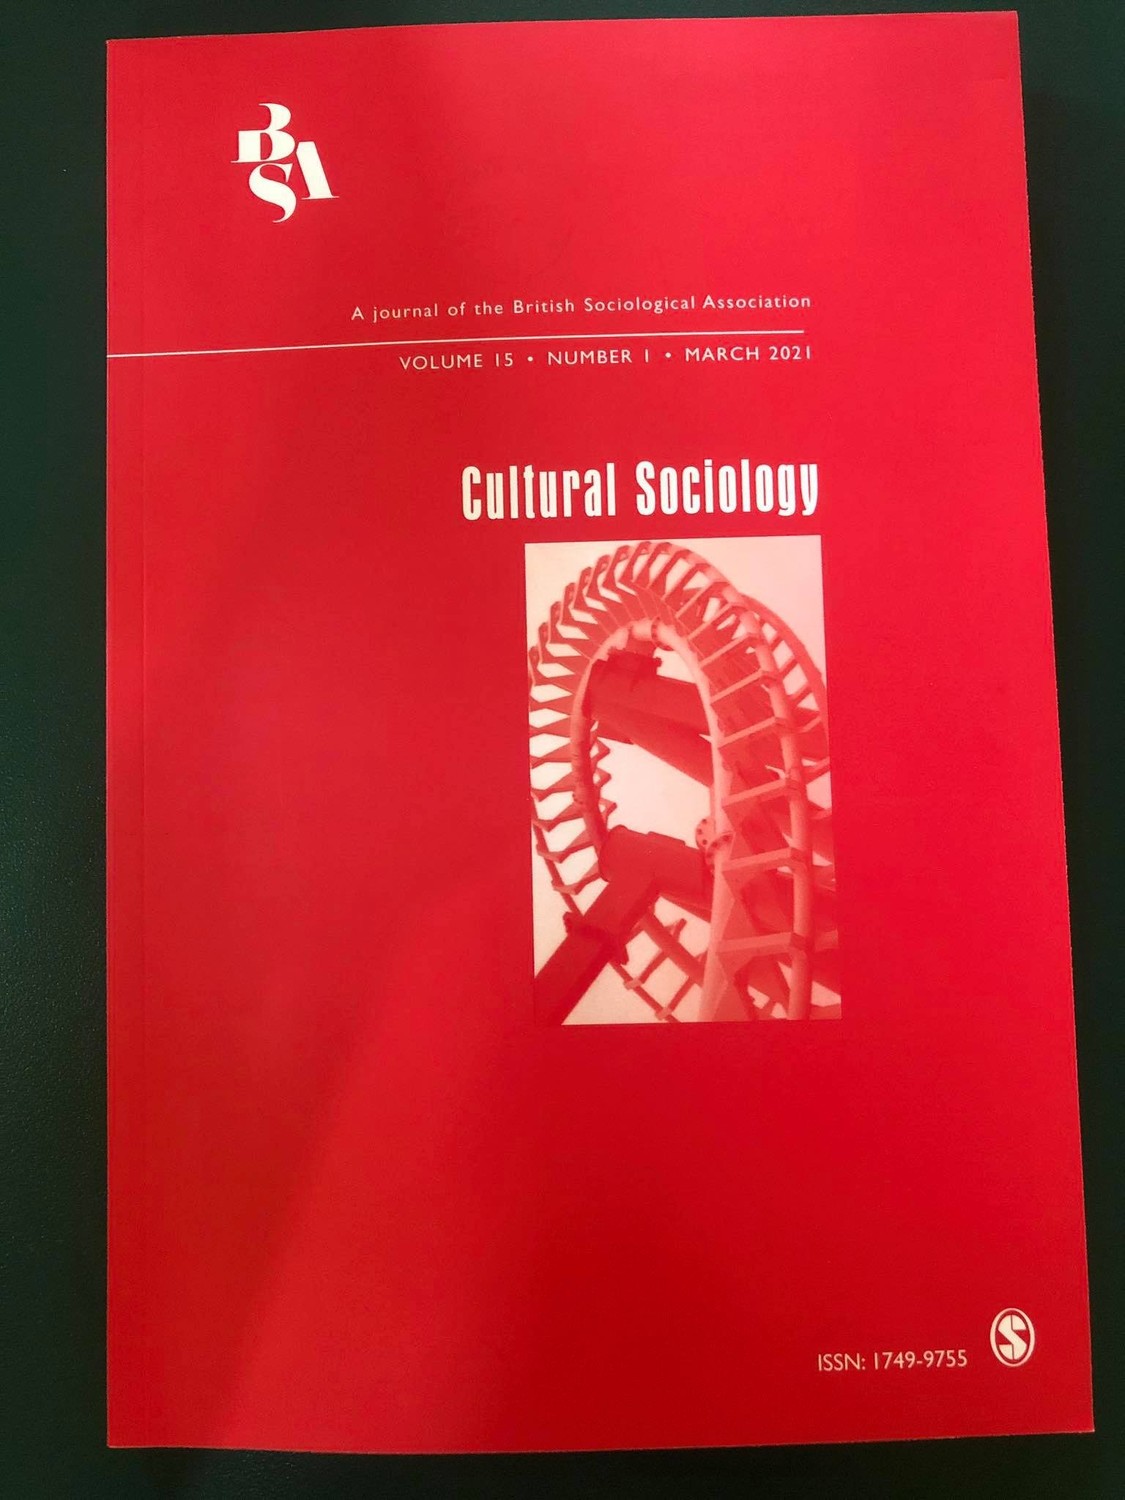 A Cultural Sociology folyóirat borítója 